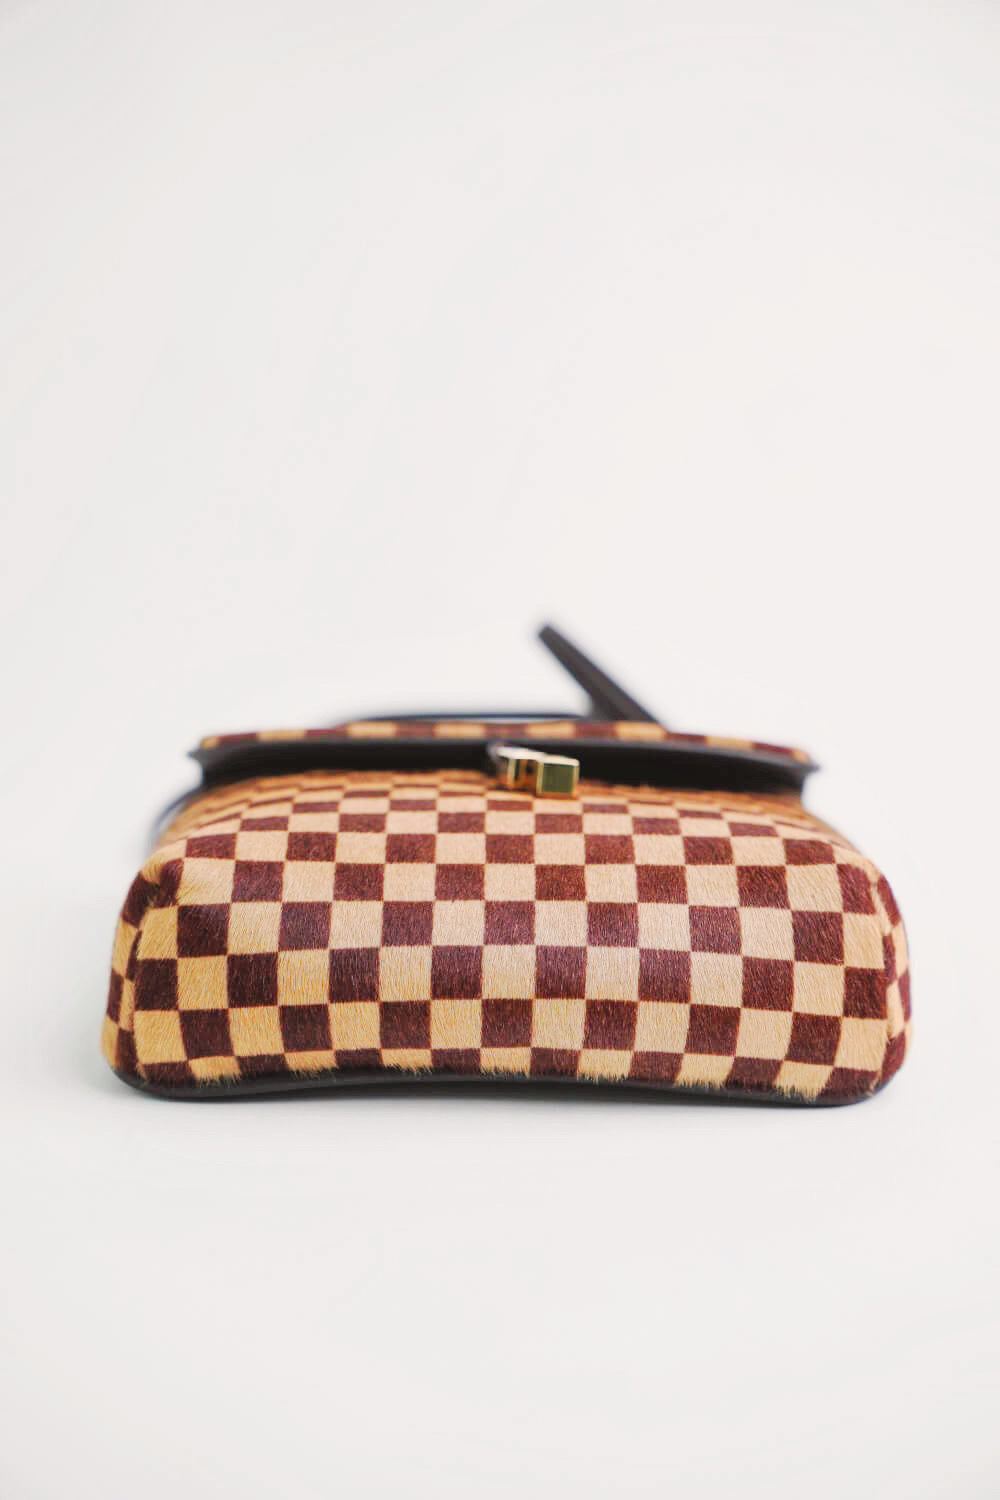 Louis Vuitton Damier Ebene Calf Hair Sauvage Lionne Bag – The Closet